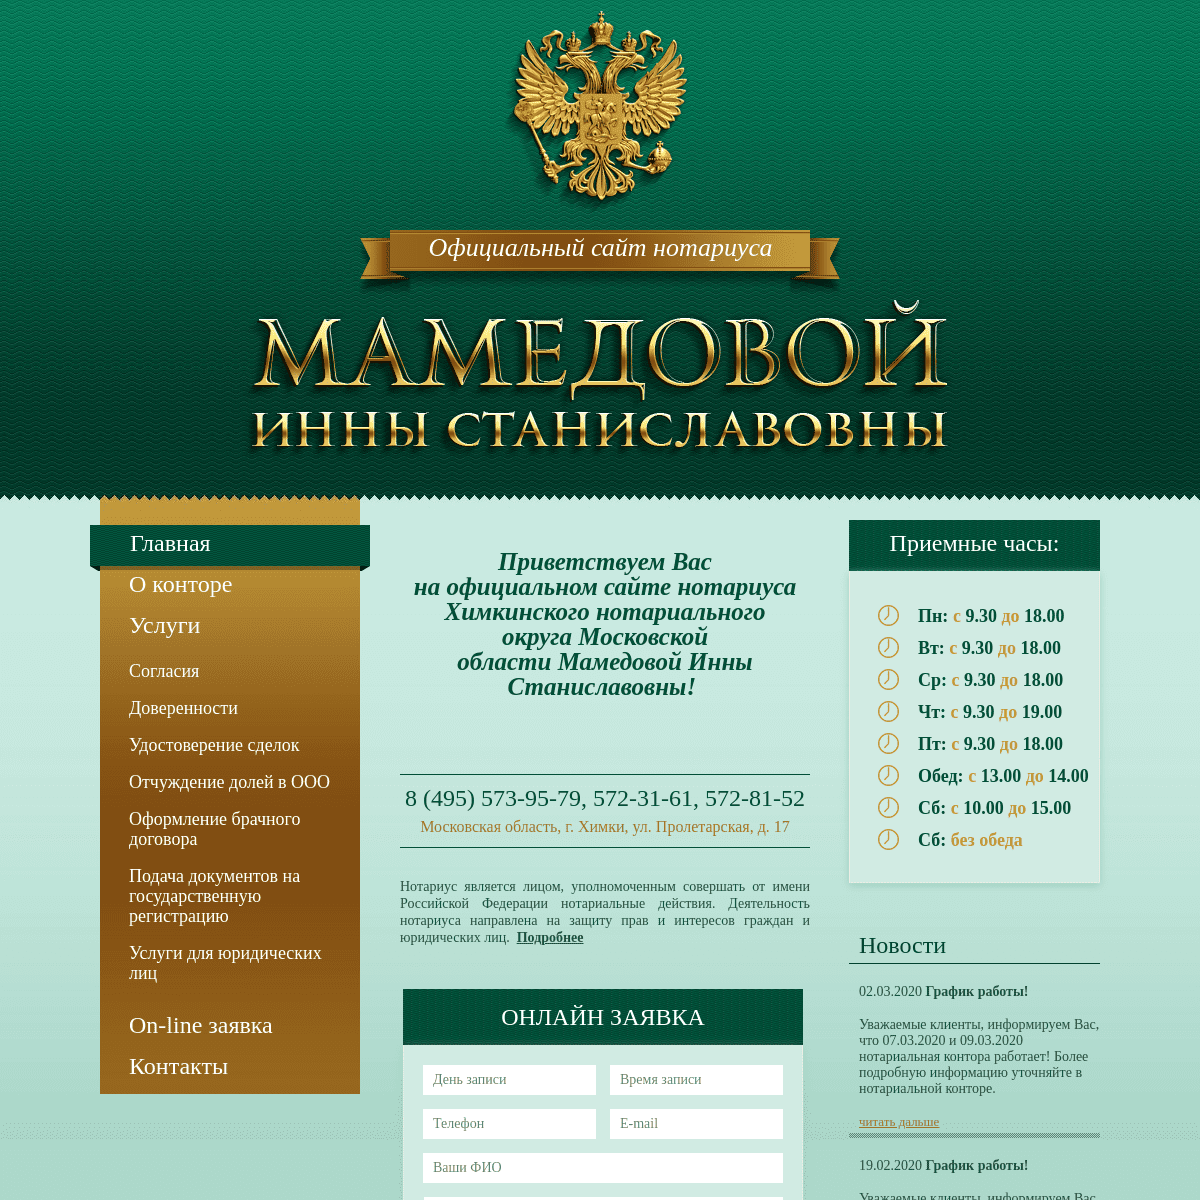 A complete backup of https://mamedova-himki.ru